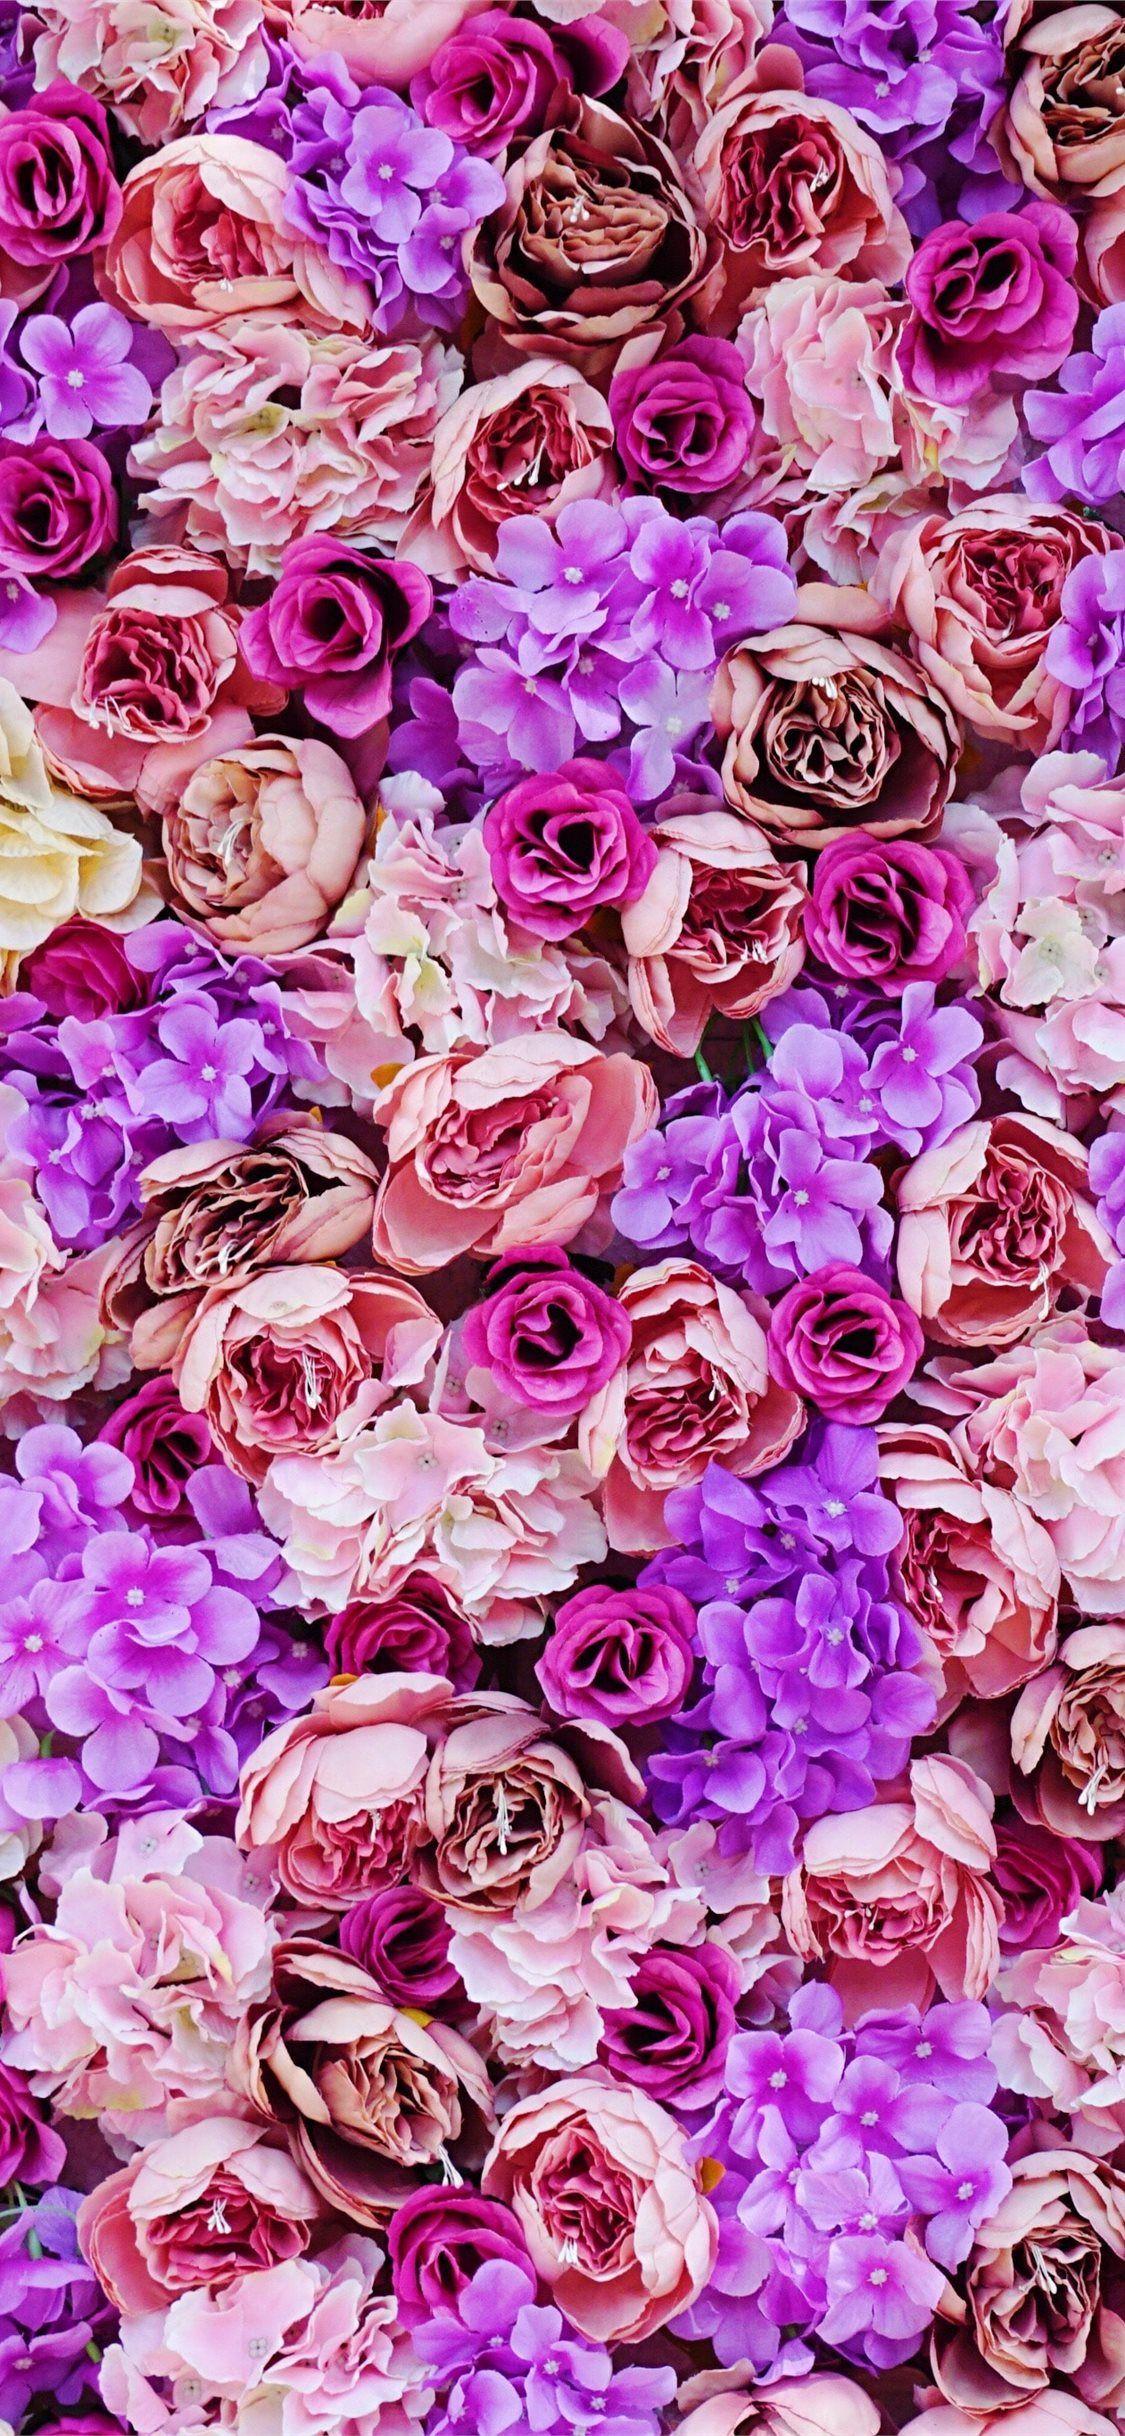 Hình nền rose cute sẽ khiến bạn lưu lại ngay khi nhìn thấy nó. Hãy cùng thưởng thức những bông hồng xinh đẹp và dễ thương trên màn hình của bạn.